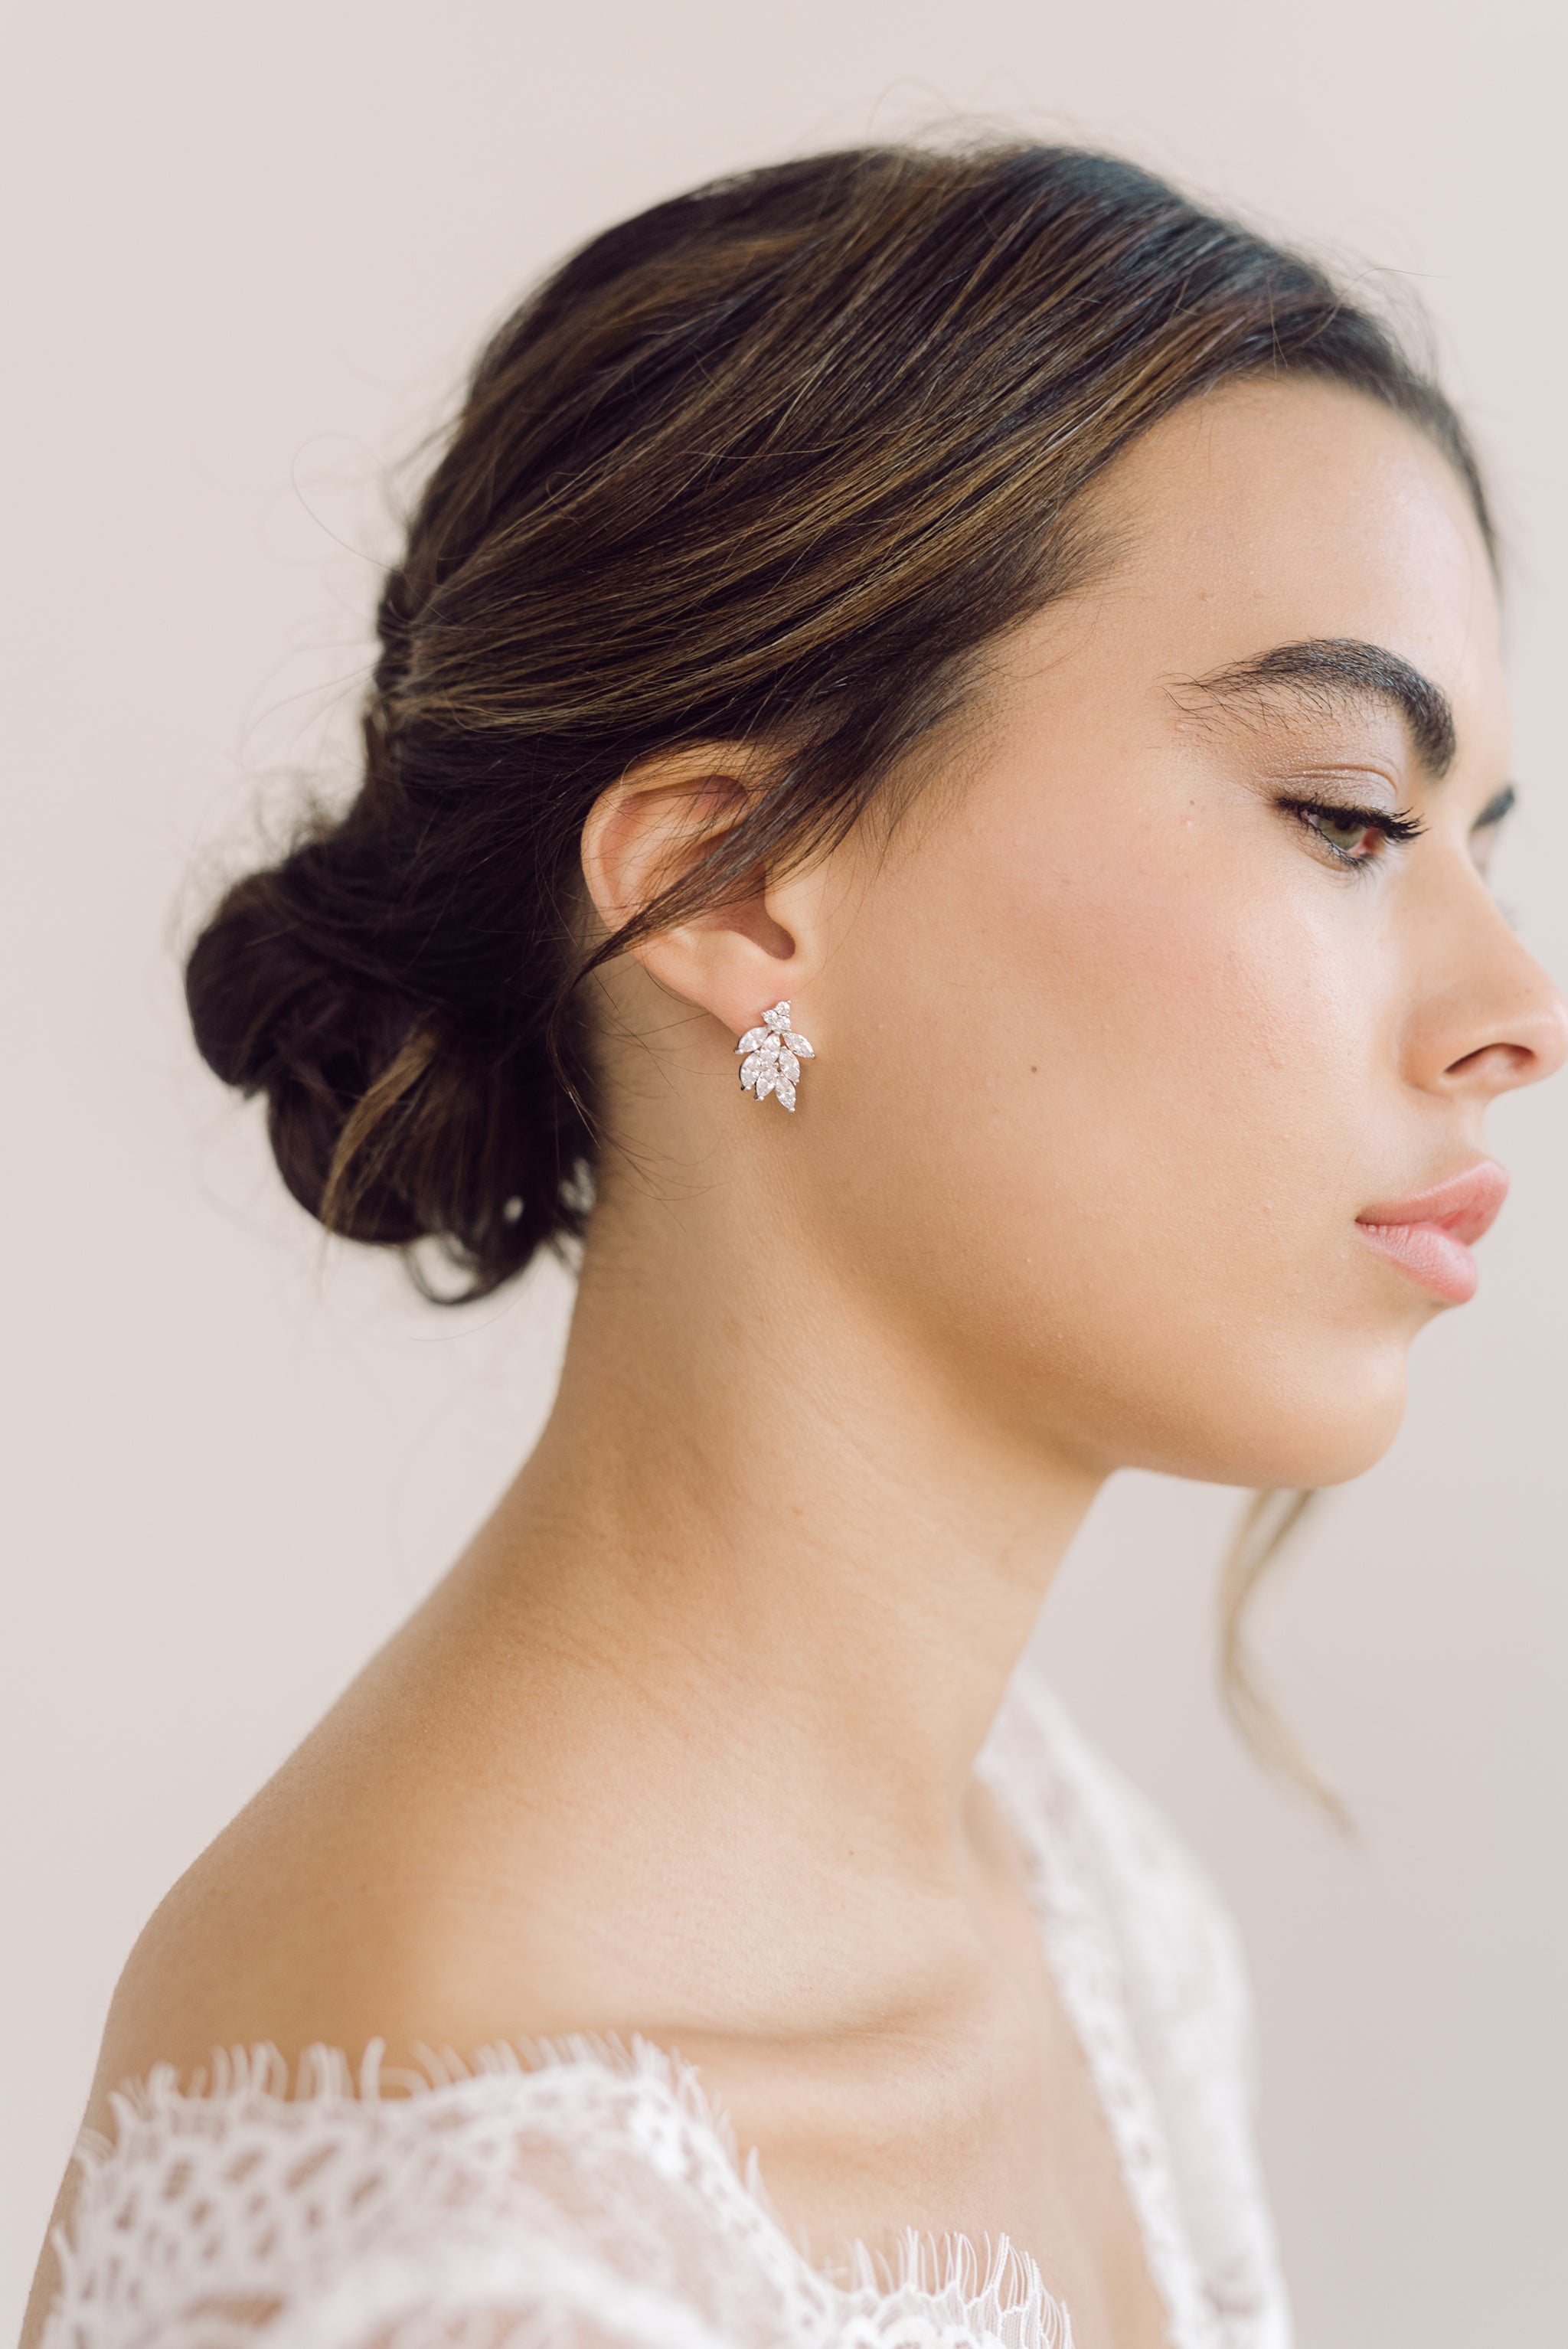 DIANA // Statement stud earrings